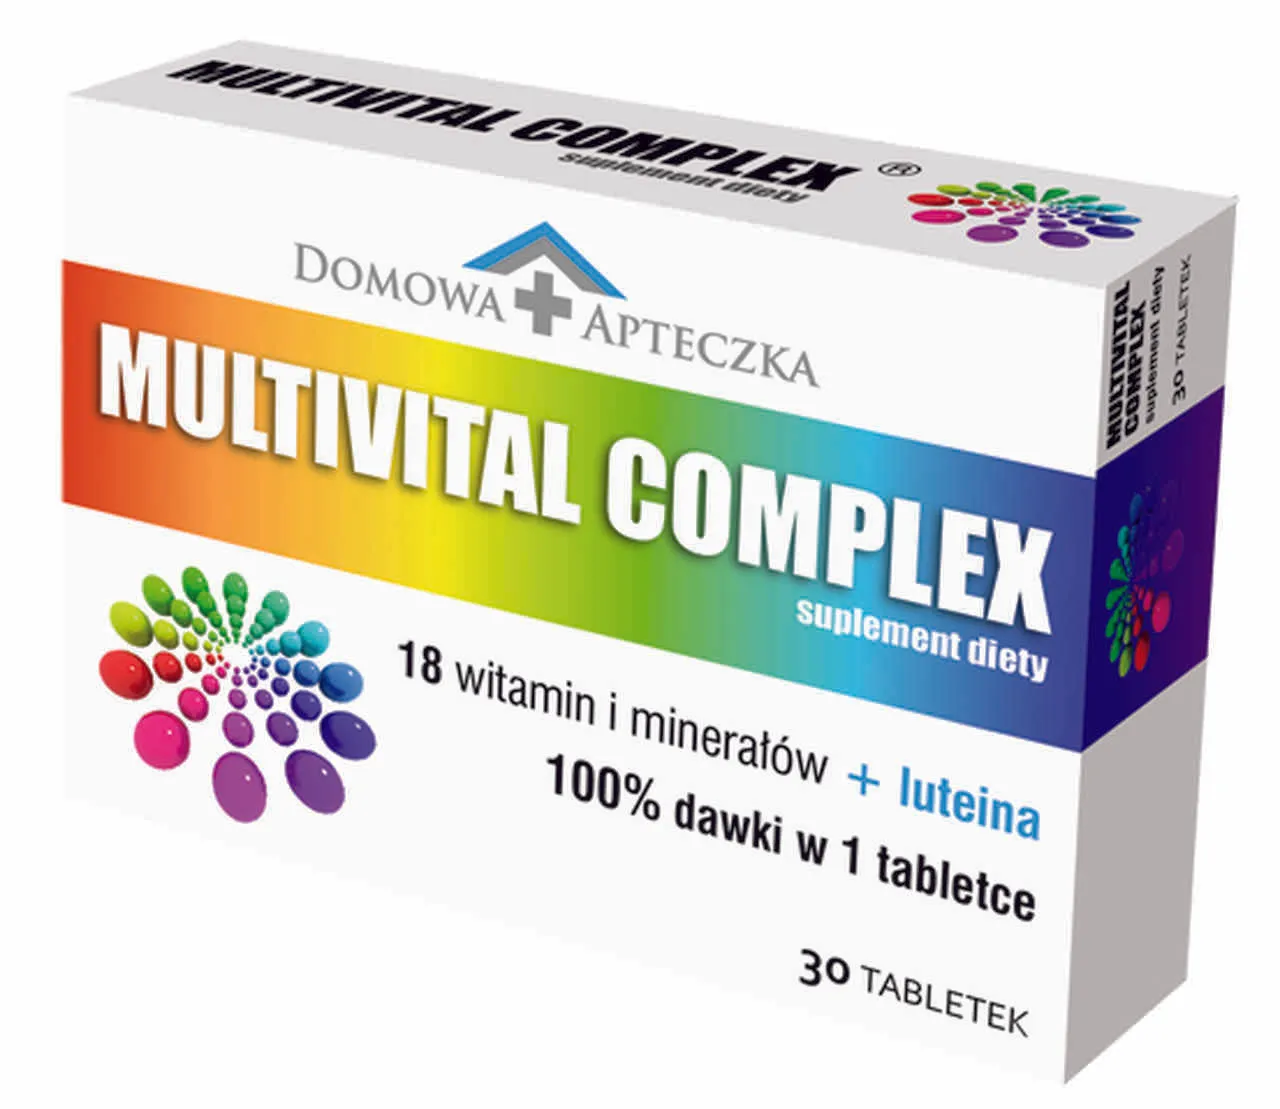 Domowa Apteczka Multivital Complex, suplement diety, 30 tabletek